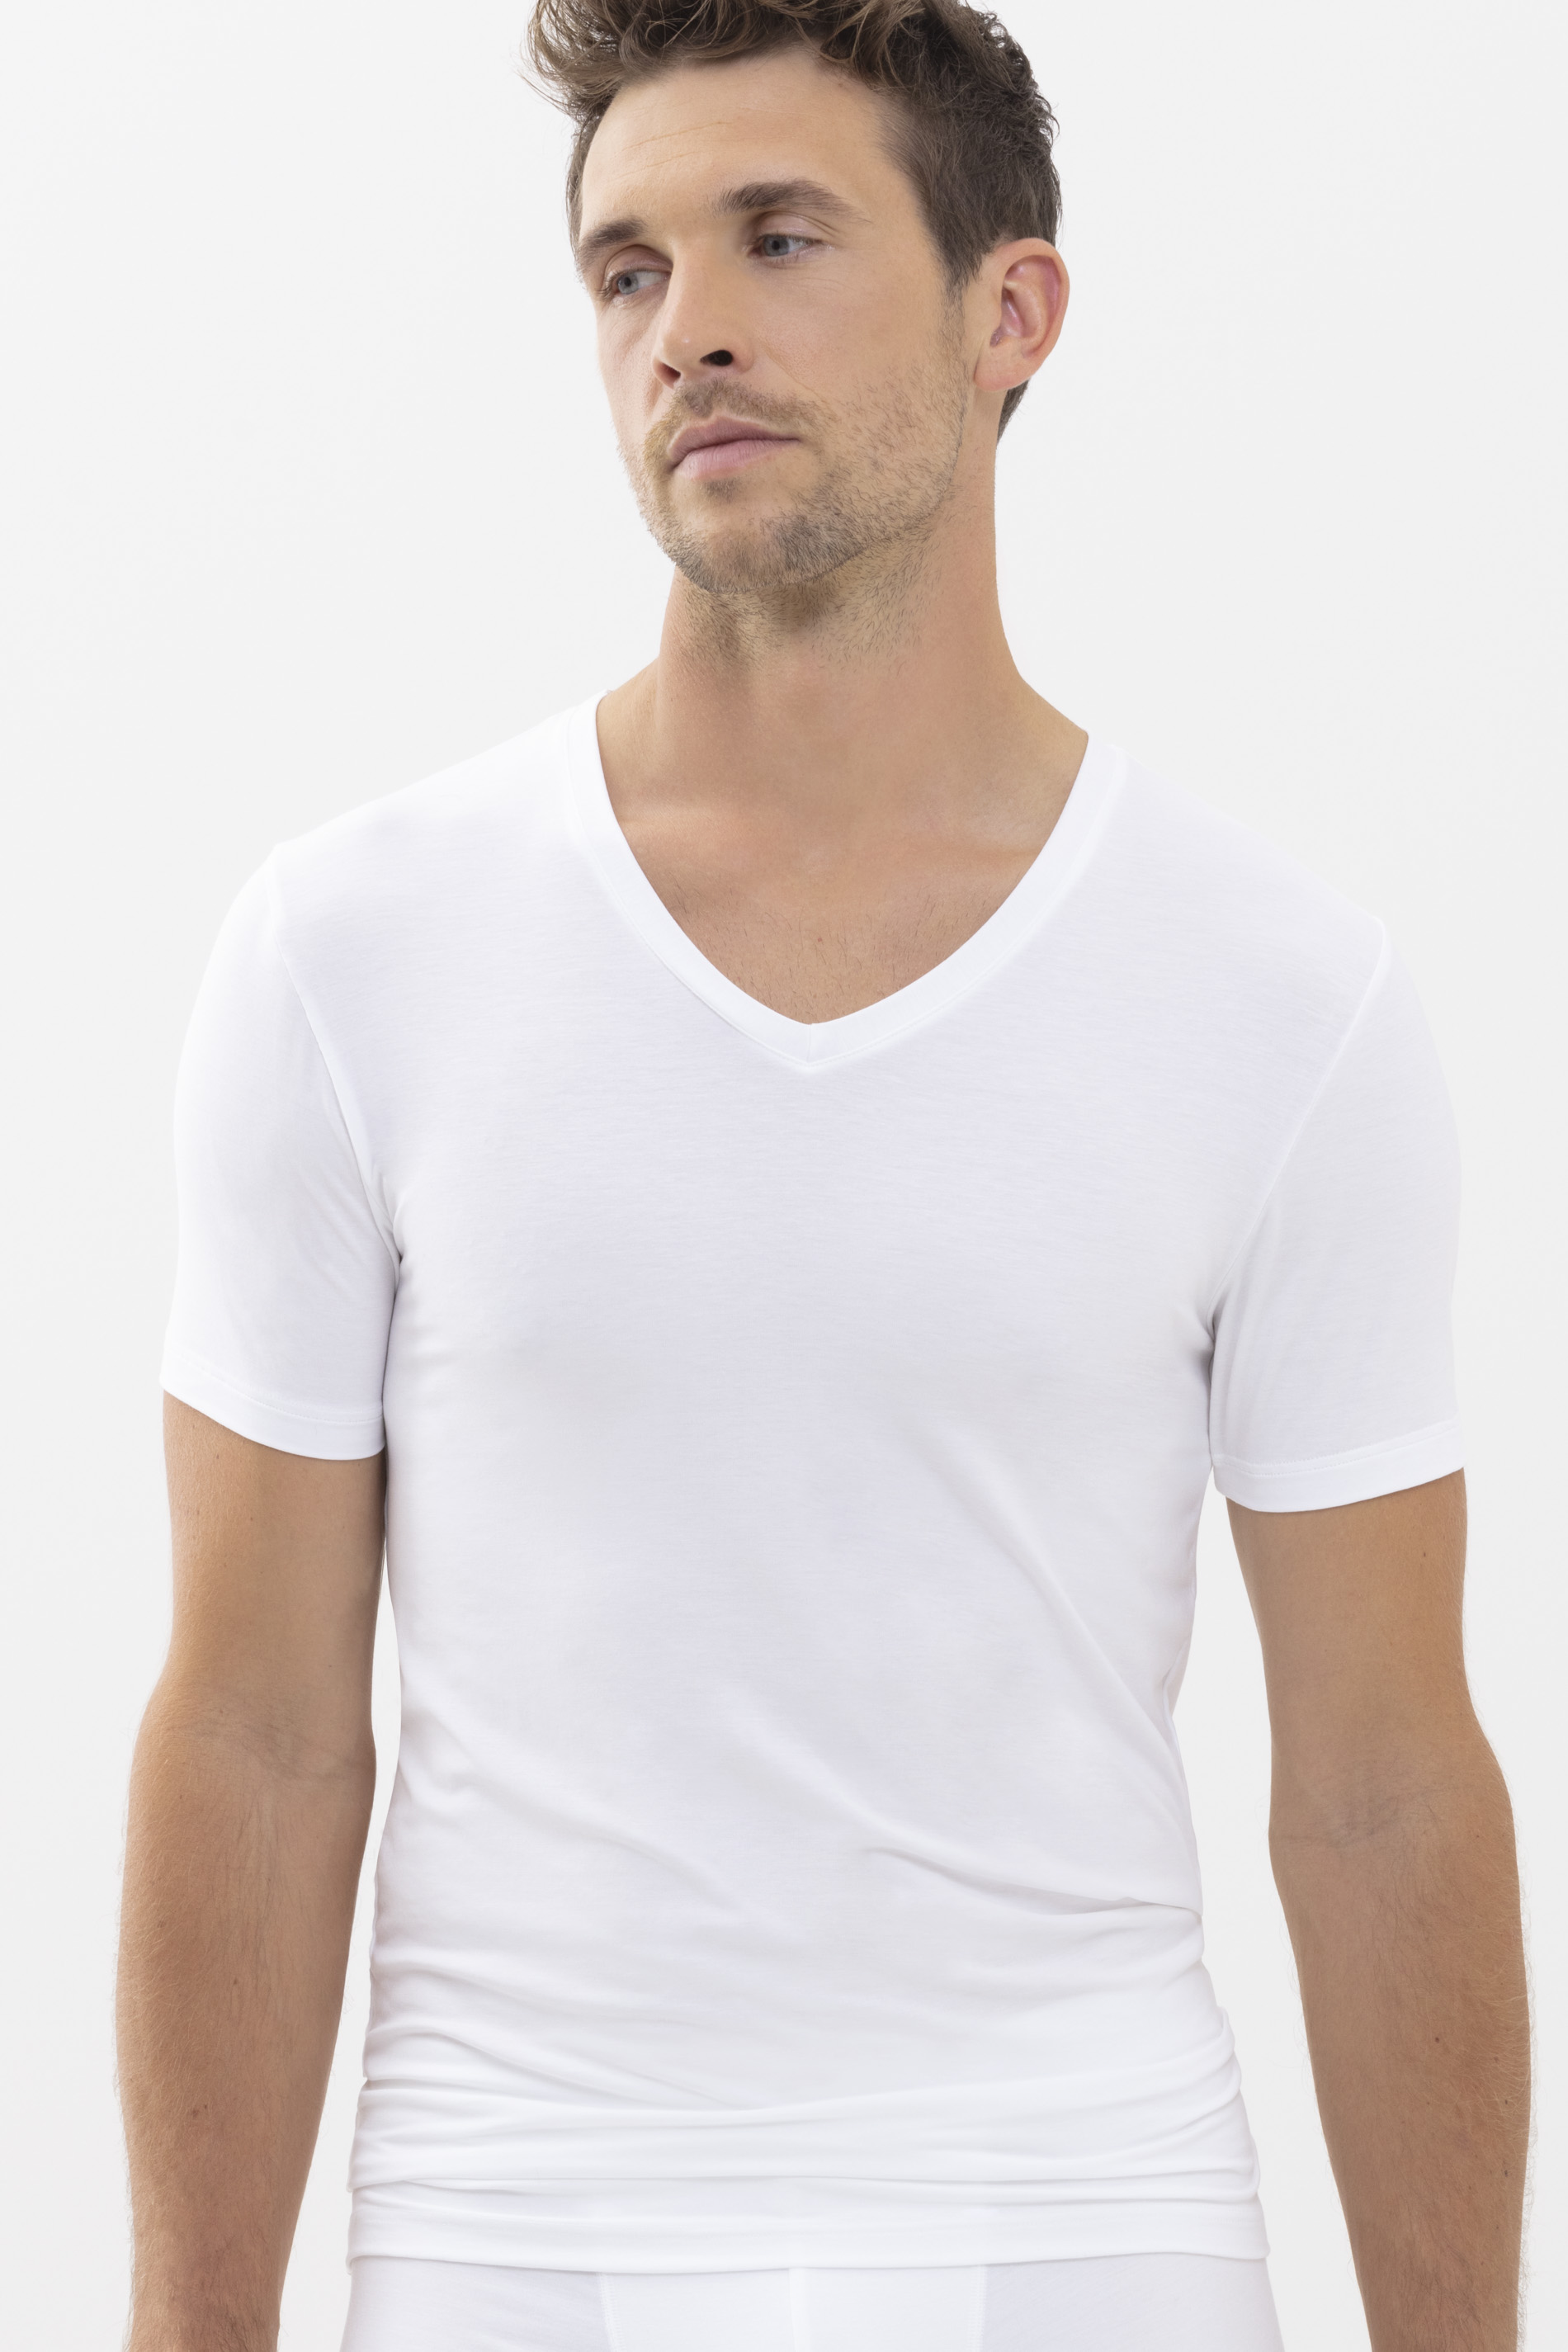 T-Shirt Weiss Serie Superior Modal Frontansicht | mey®